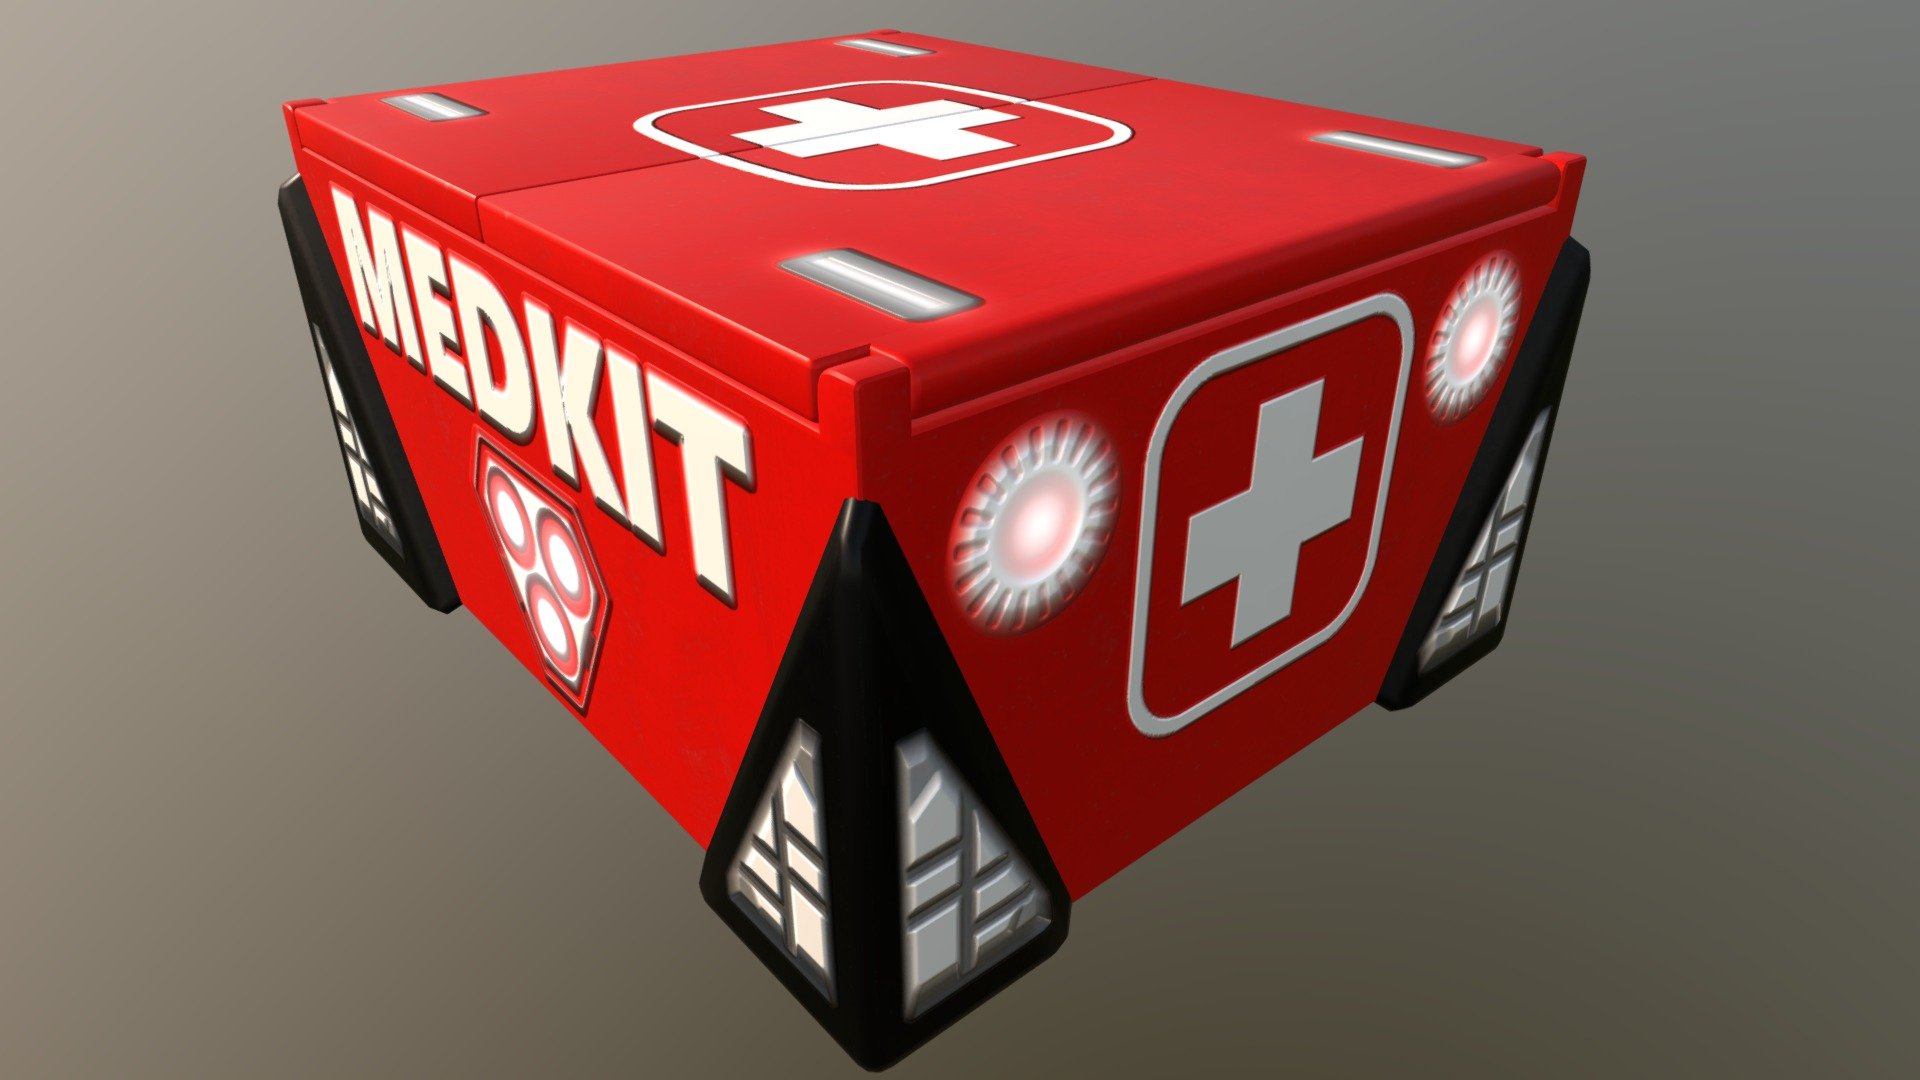 Medkit Box 8 - 3D model by Anti-Ded 3d model